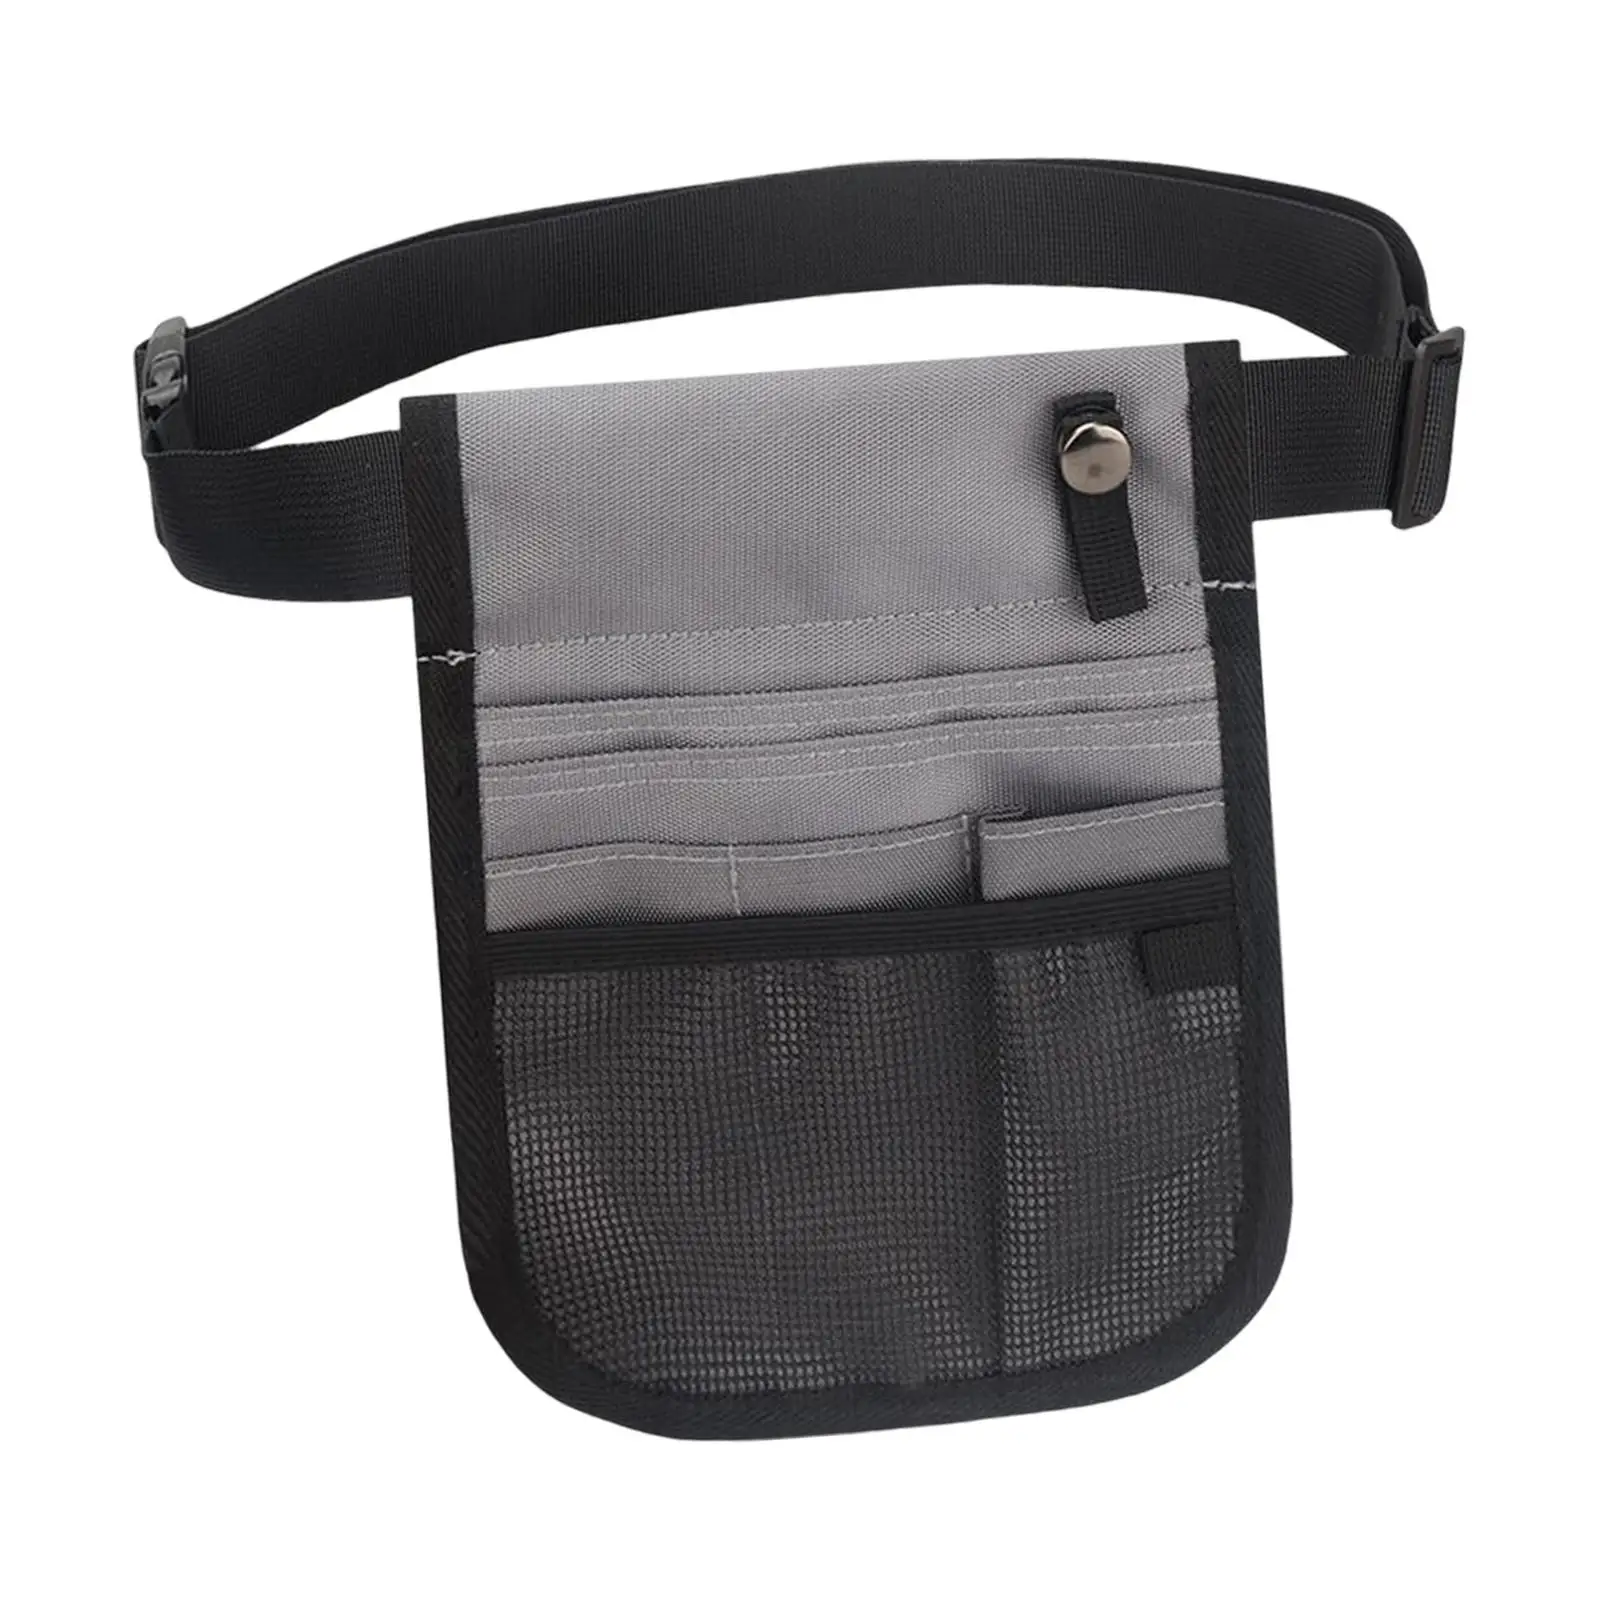 Durable Nurse Organizer Belt Waist Bag Utility Hip Bag Case Pouch Fanny Pack